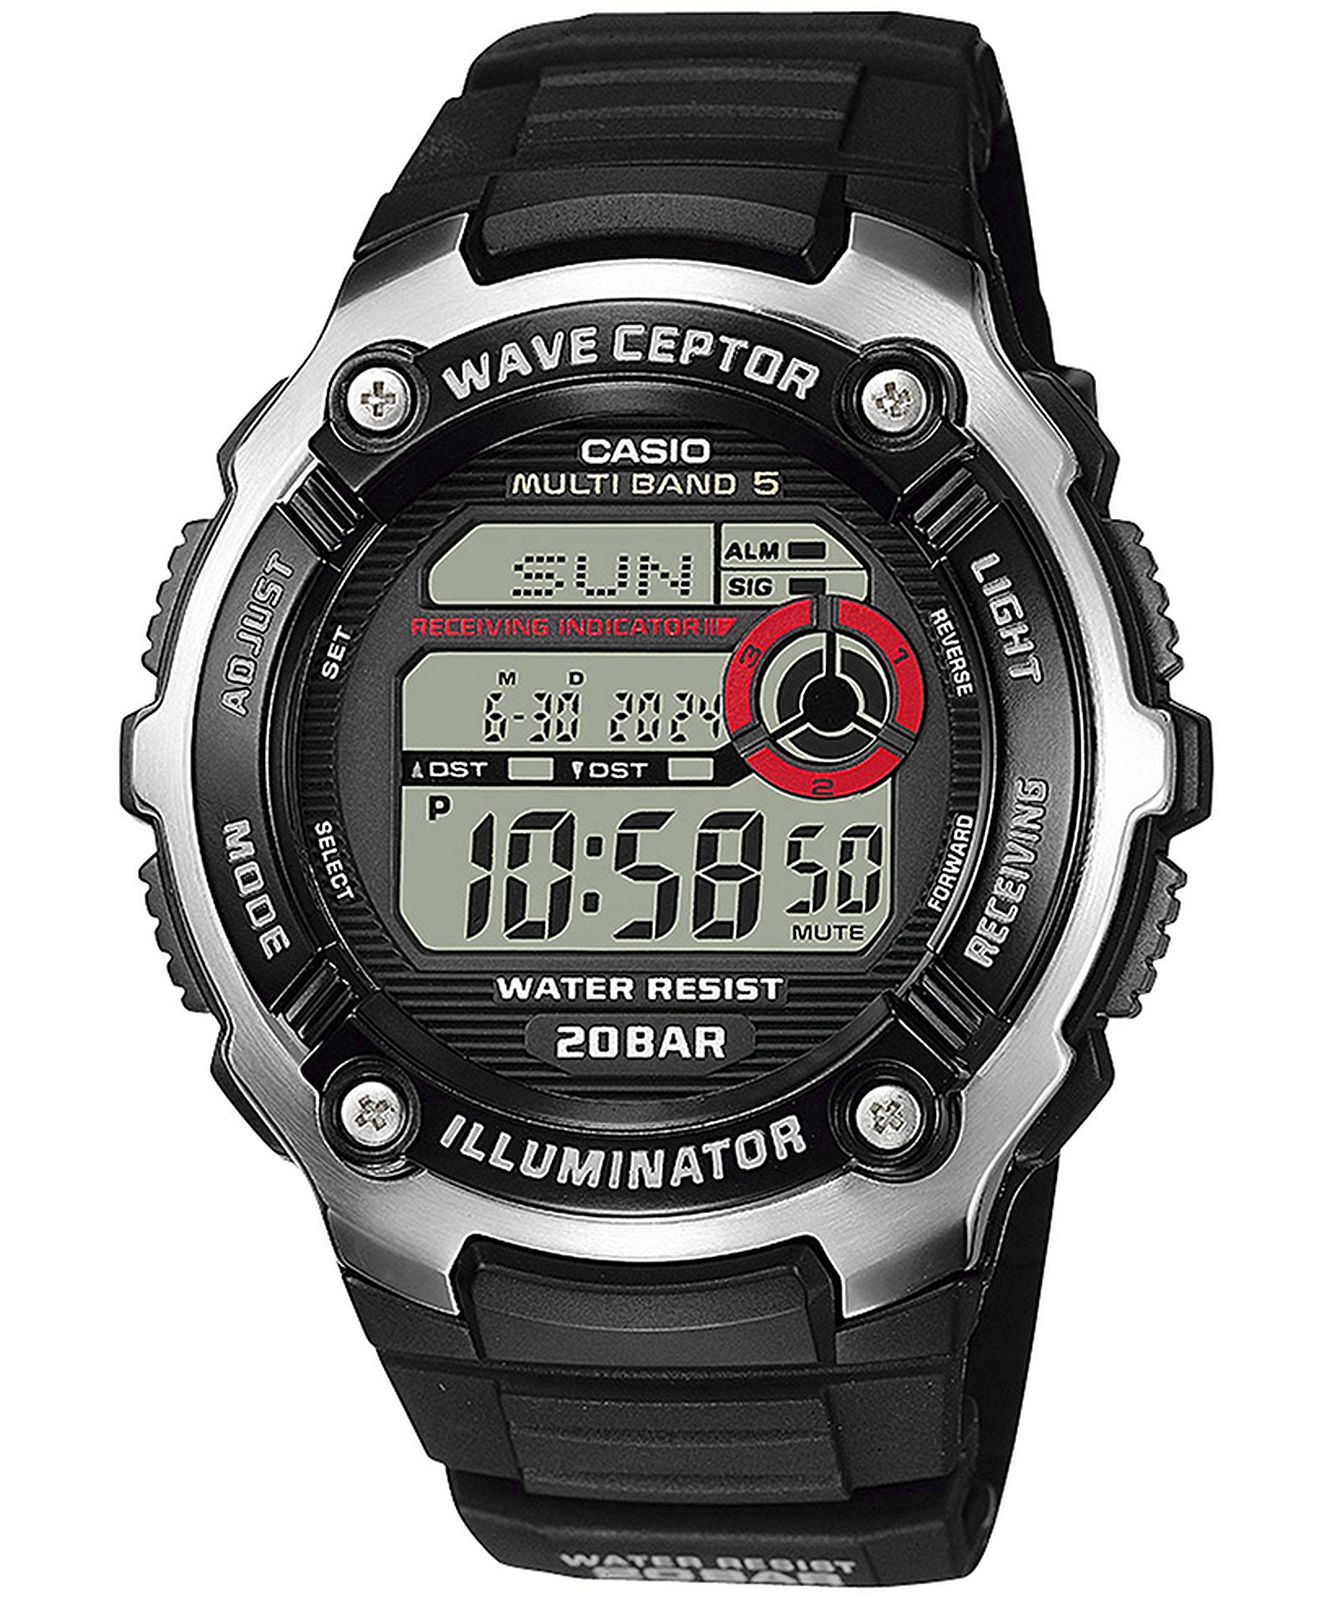 Casio WV-200R-1AEF - Waveceptor Watch • Watchard.com